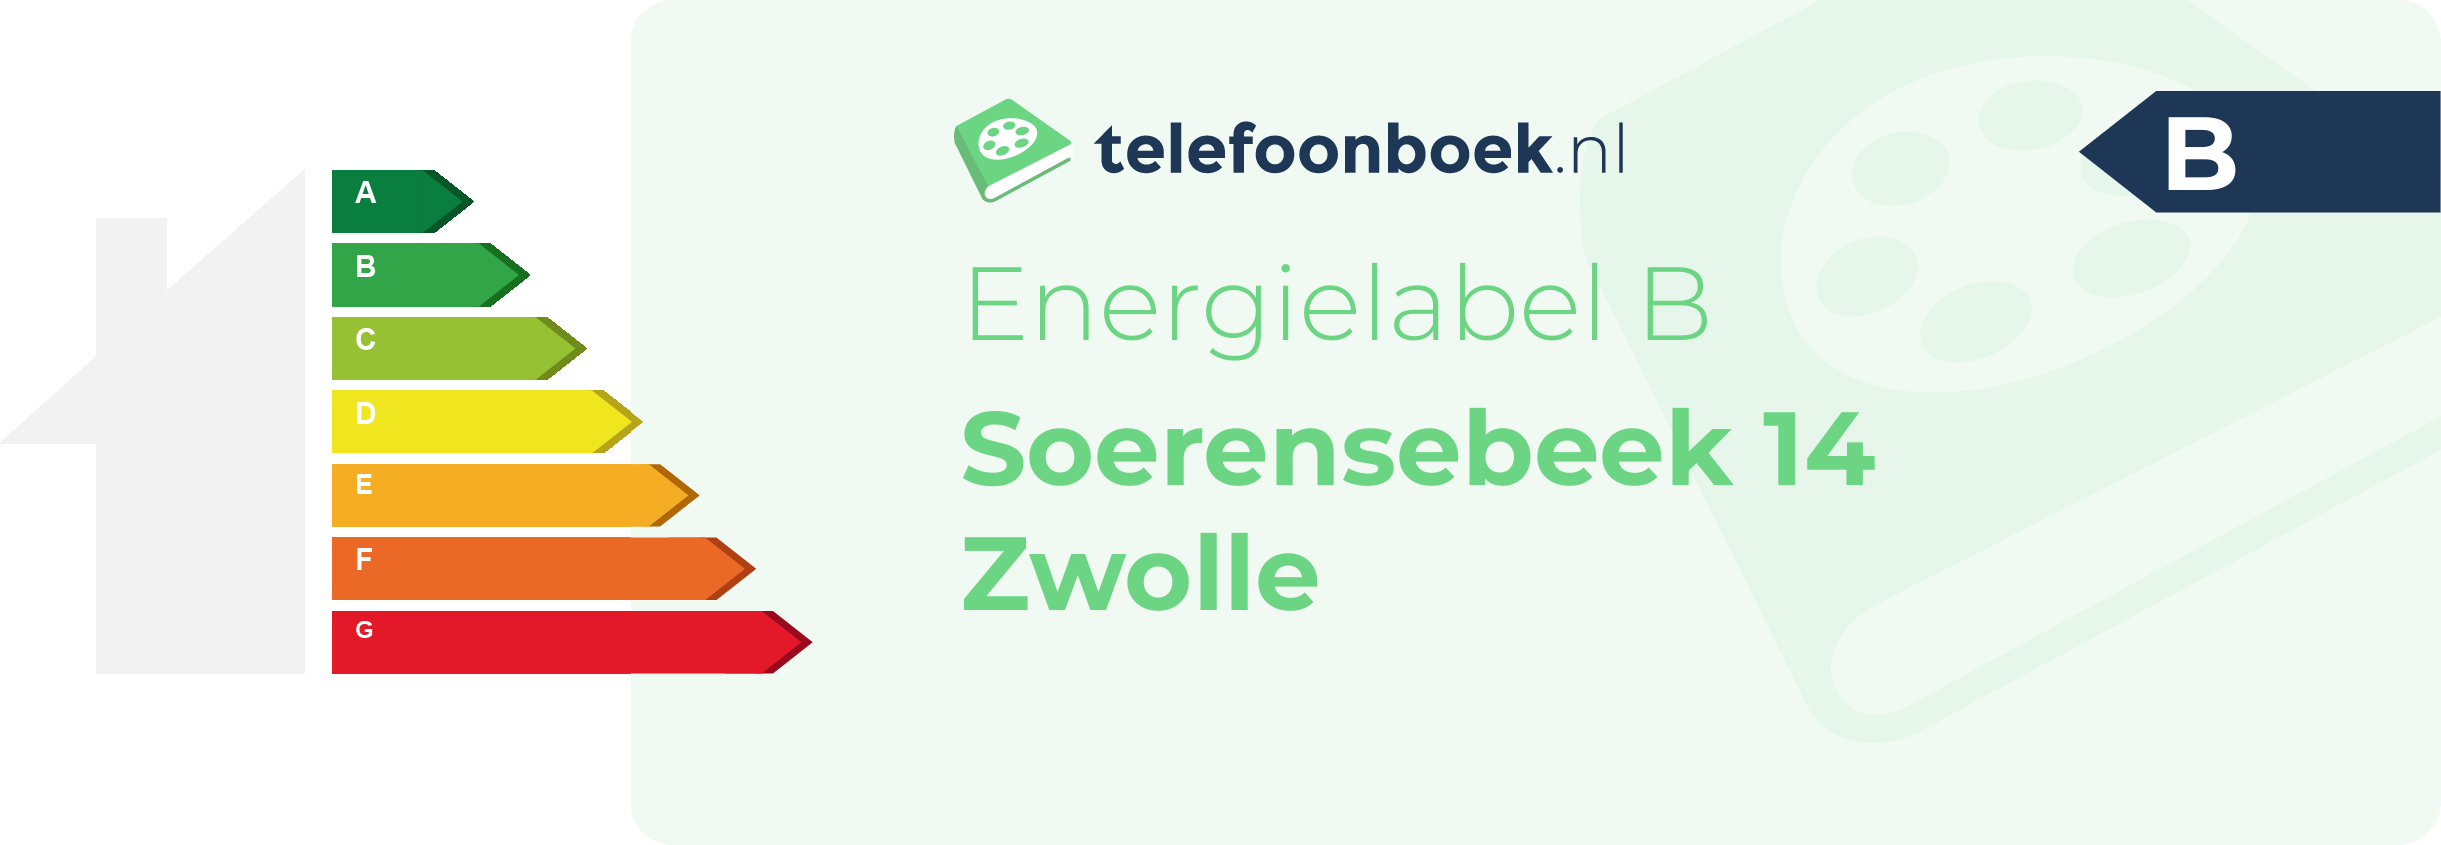 Energielabel Soerensebeek 14 Zwolle